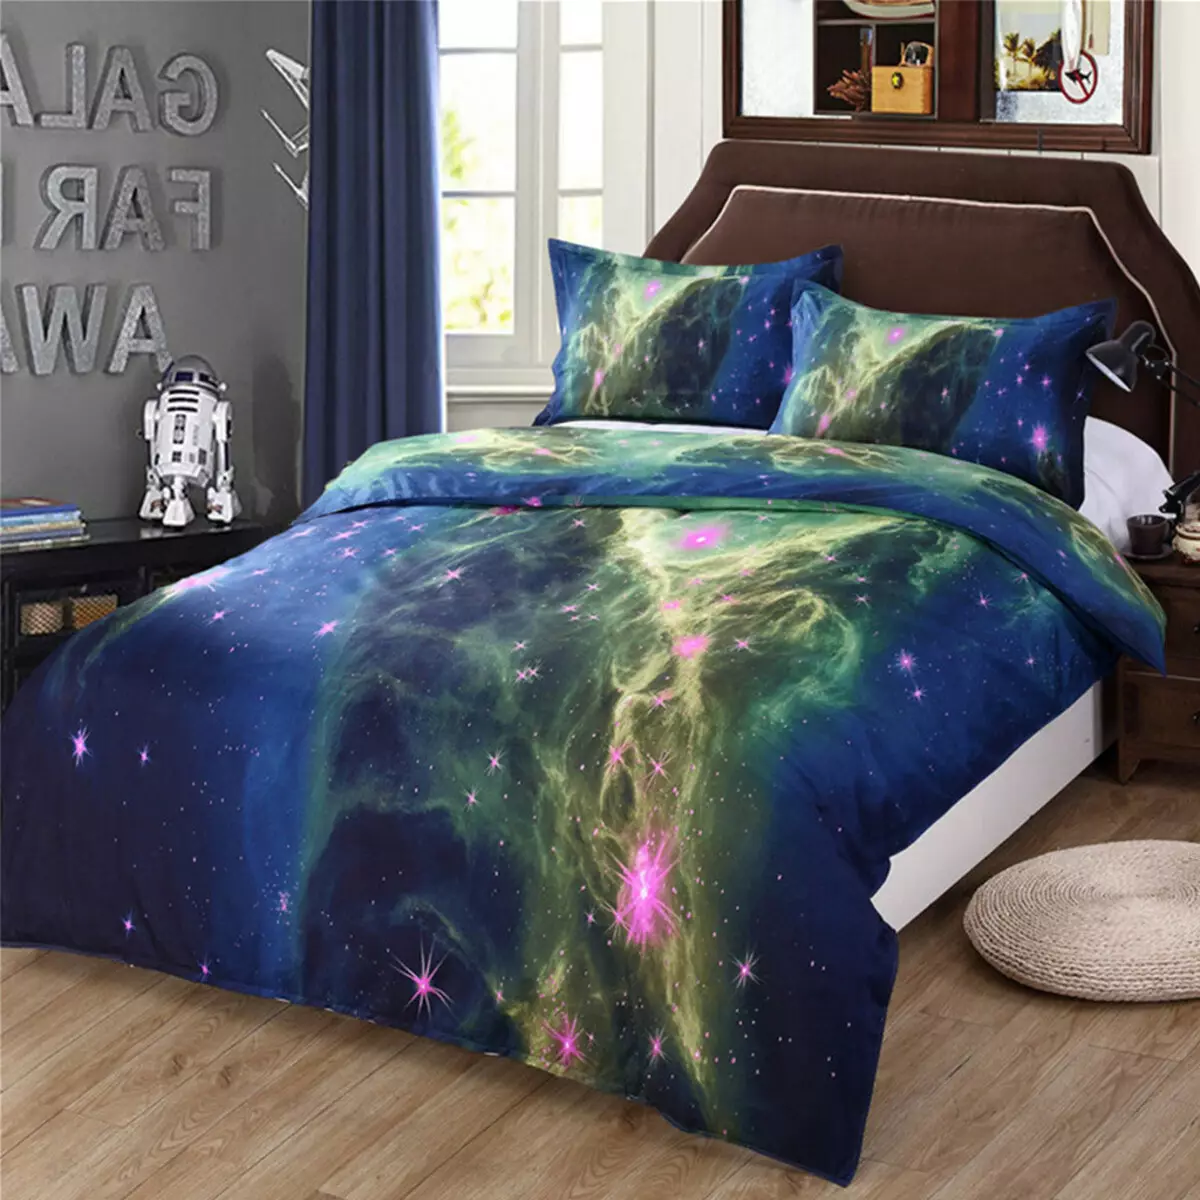 ผ้าปูเตียง Cosmos: รีวิวชุดที่มีรูปแบบของดาวเคราะห์และดวงดาว วิธีการดูแล? 20696_2